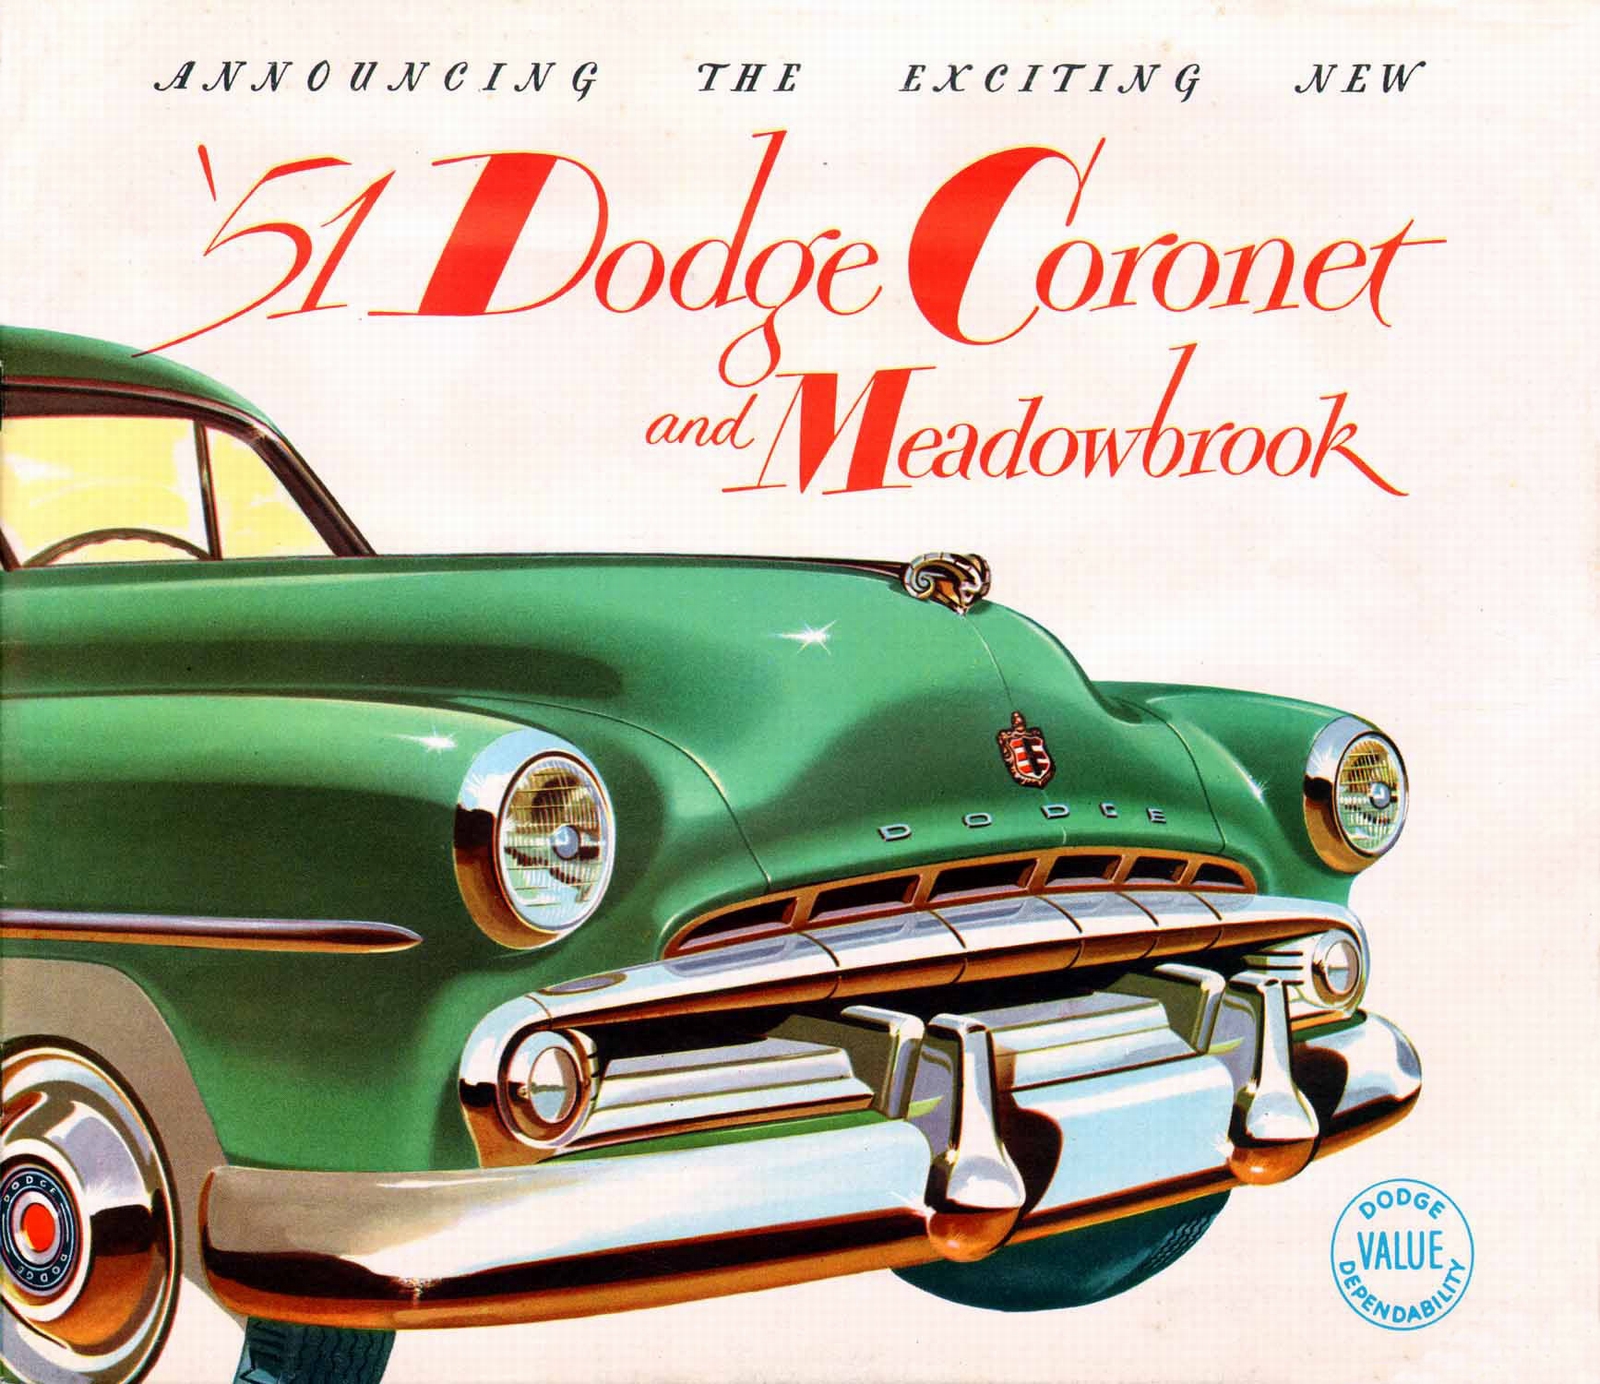 n_1951 Dodge Coronet and Meadowbrook-01.jpg